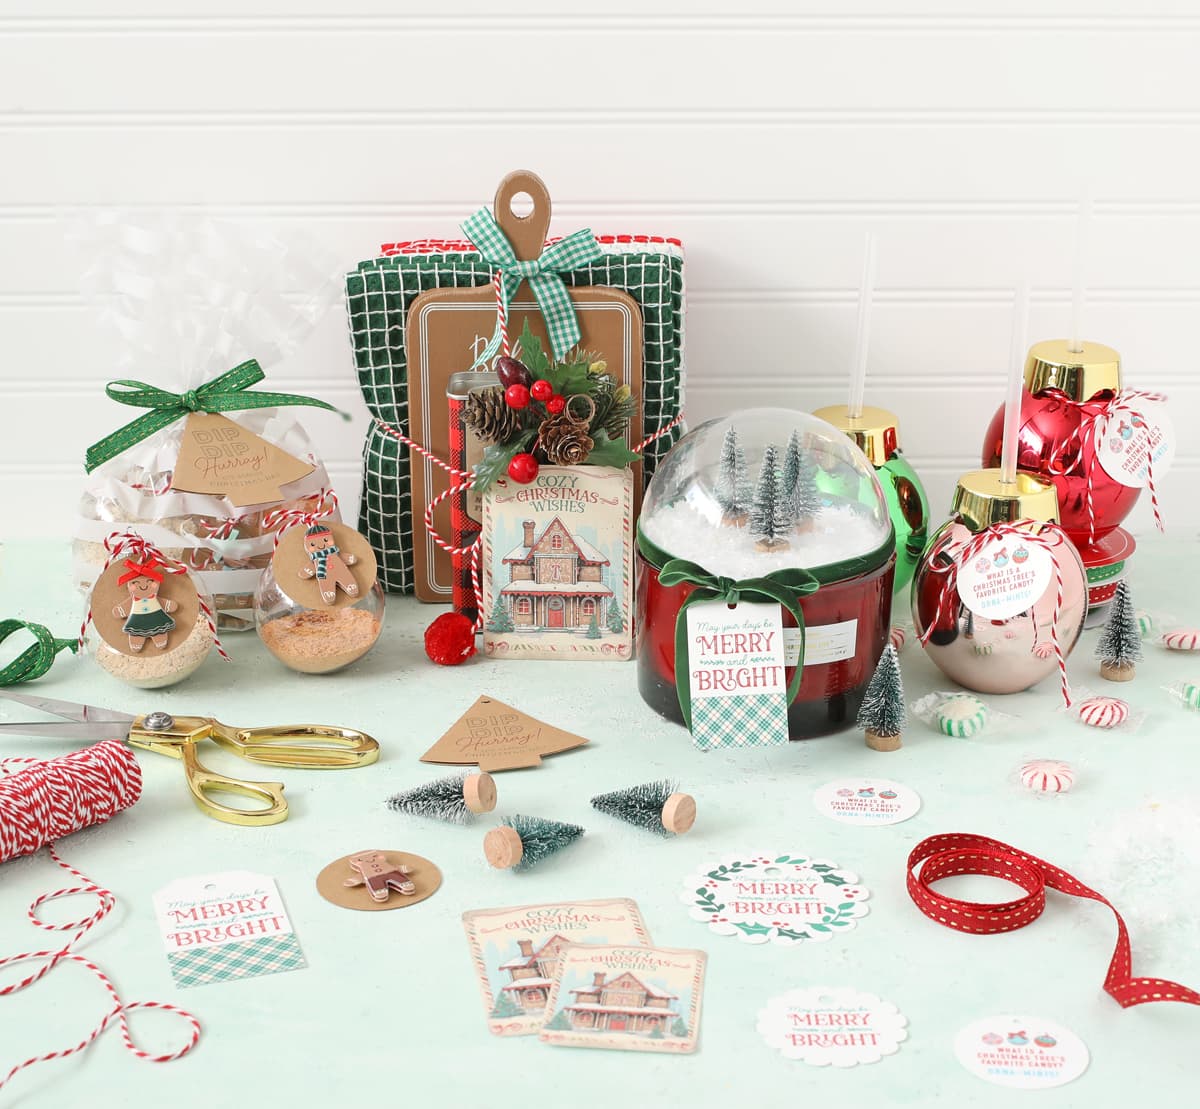 Creative Christmas Gift Ideas On A Budget | by Silvia Floroian |  ILLUMINATION | Medium